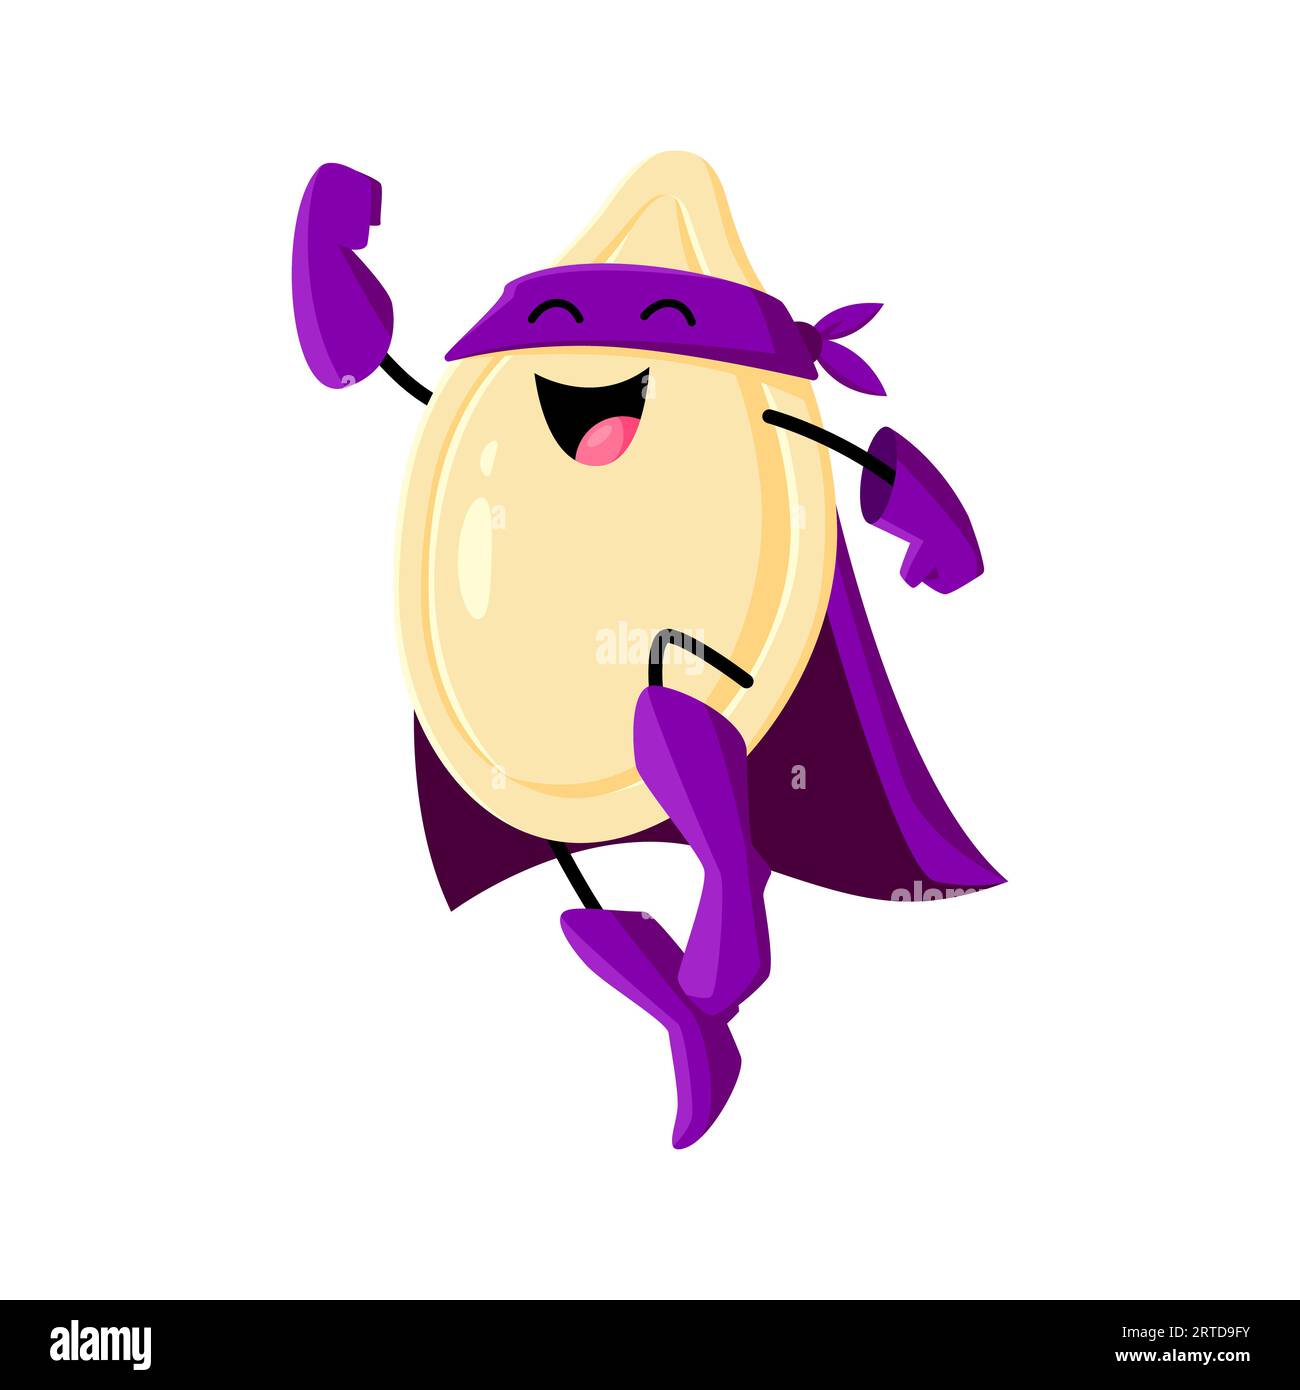 Cartoon Kürbis Samen Superheldenfigur. Vektorfigur in lila Kostüm mit Maske und cape fliegt durch die Luft, knackt Witze und kämpft mit der Kraft seiner nussigen Stärke gegen Bösewichte Stock Vektor